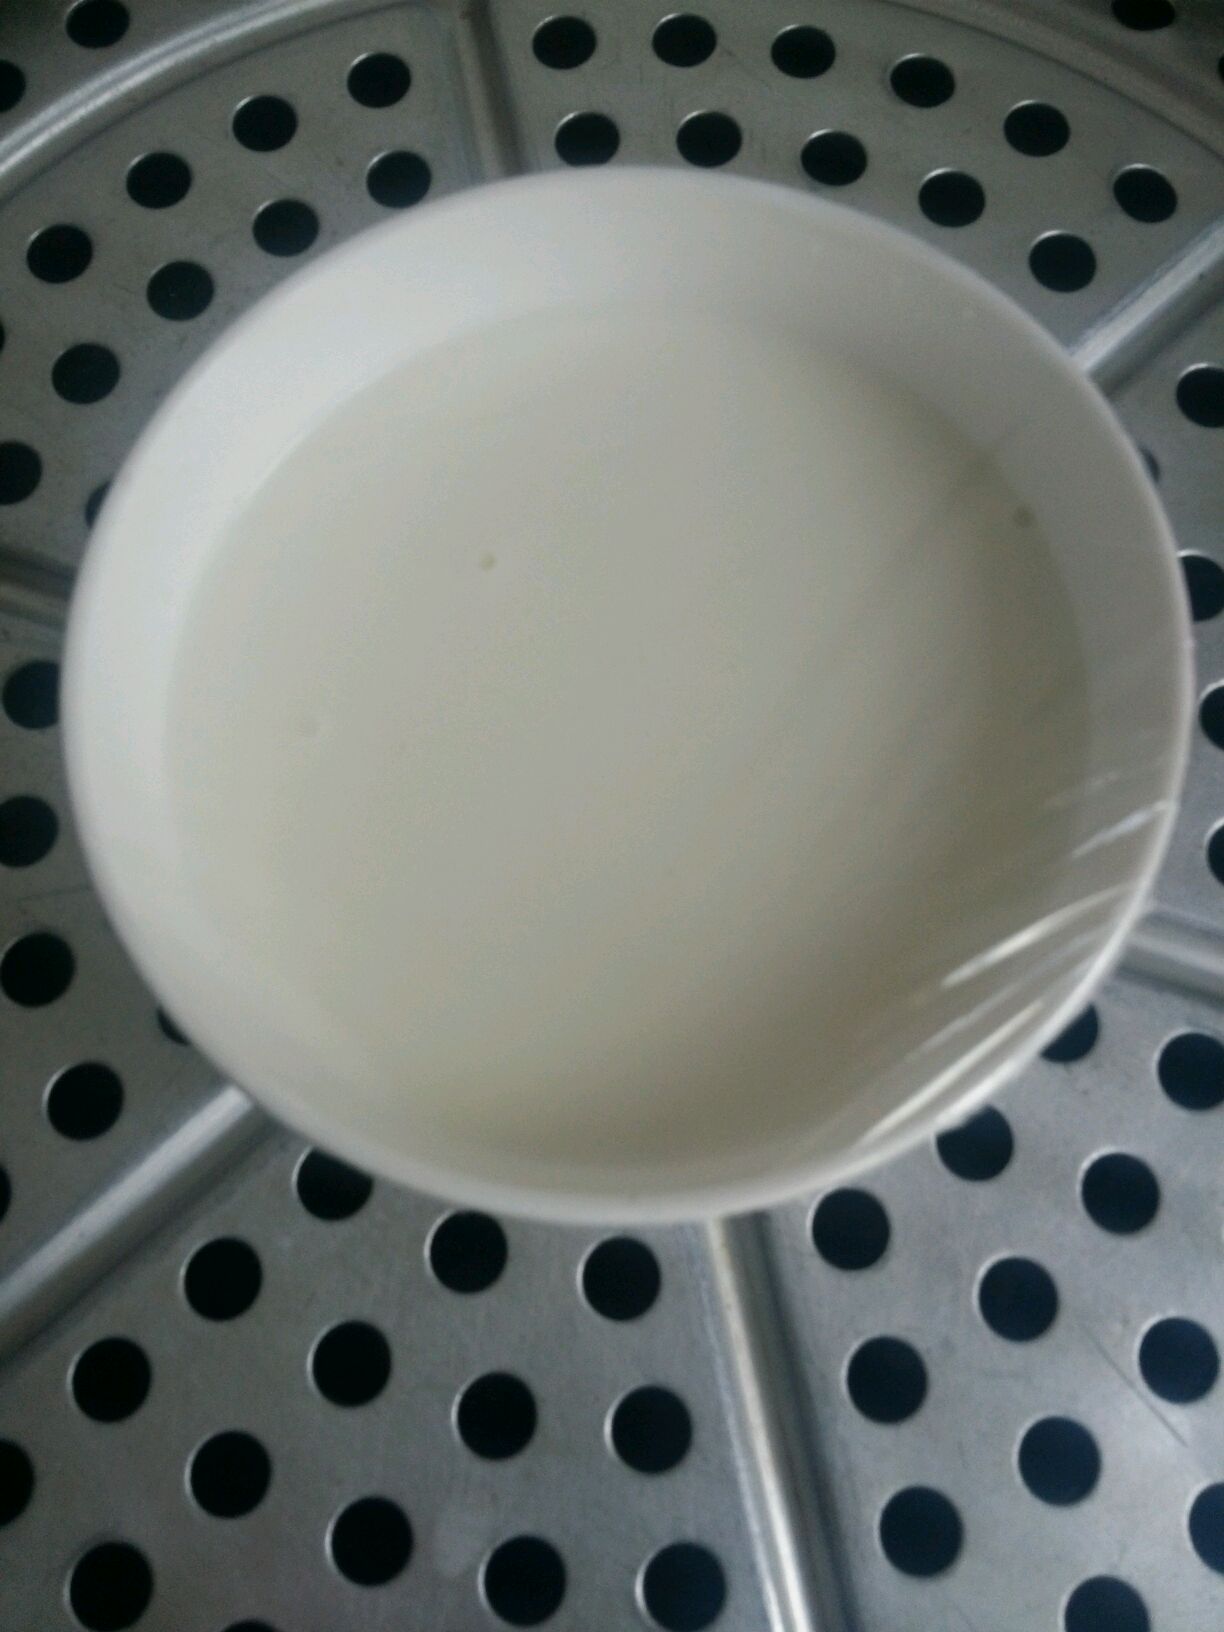 挑戰全奶粉的下午茶 - 美食板 | Dcard